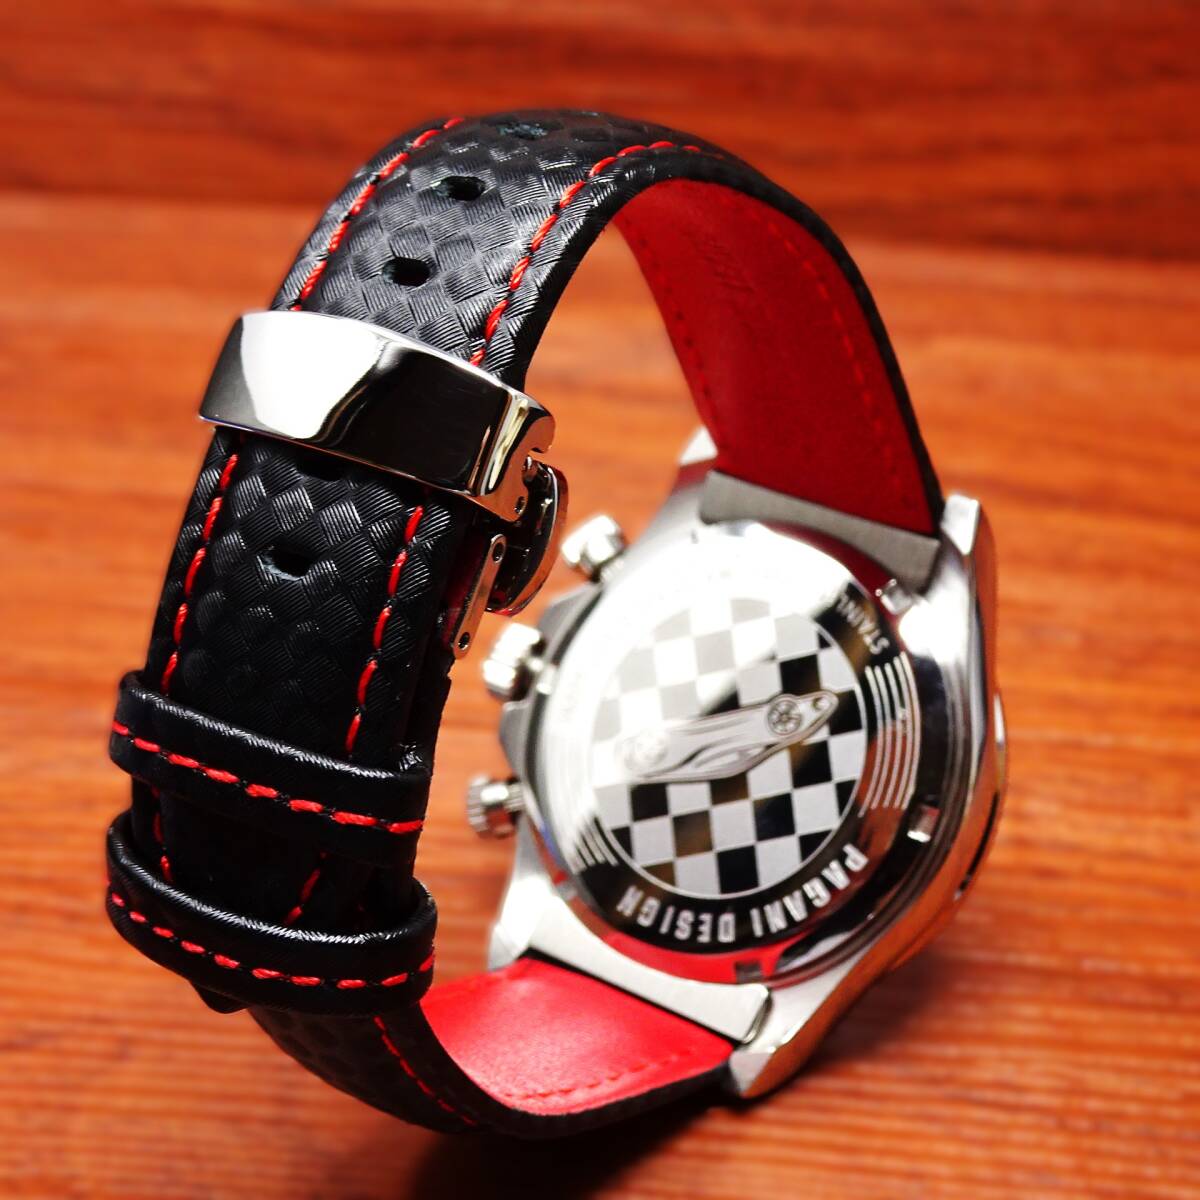 送料無料・新品・パガーニデザイン・メンズ・セイコー製VK63クロノグラフクオーツ式腕時計・オマージュ・カーボン柄本革モデル・PD-1676・w